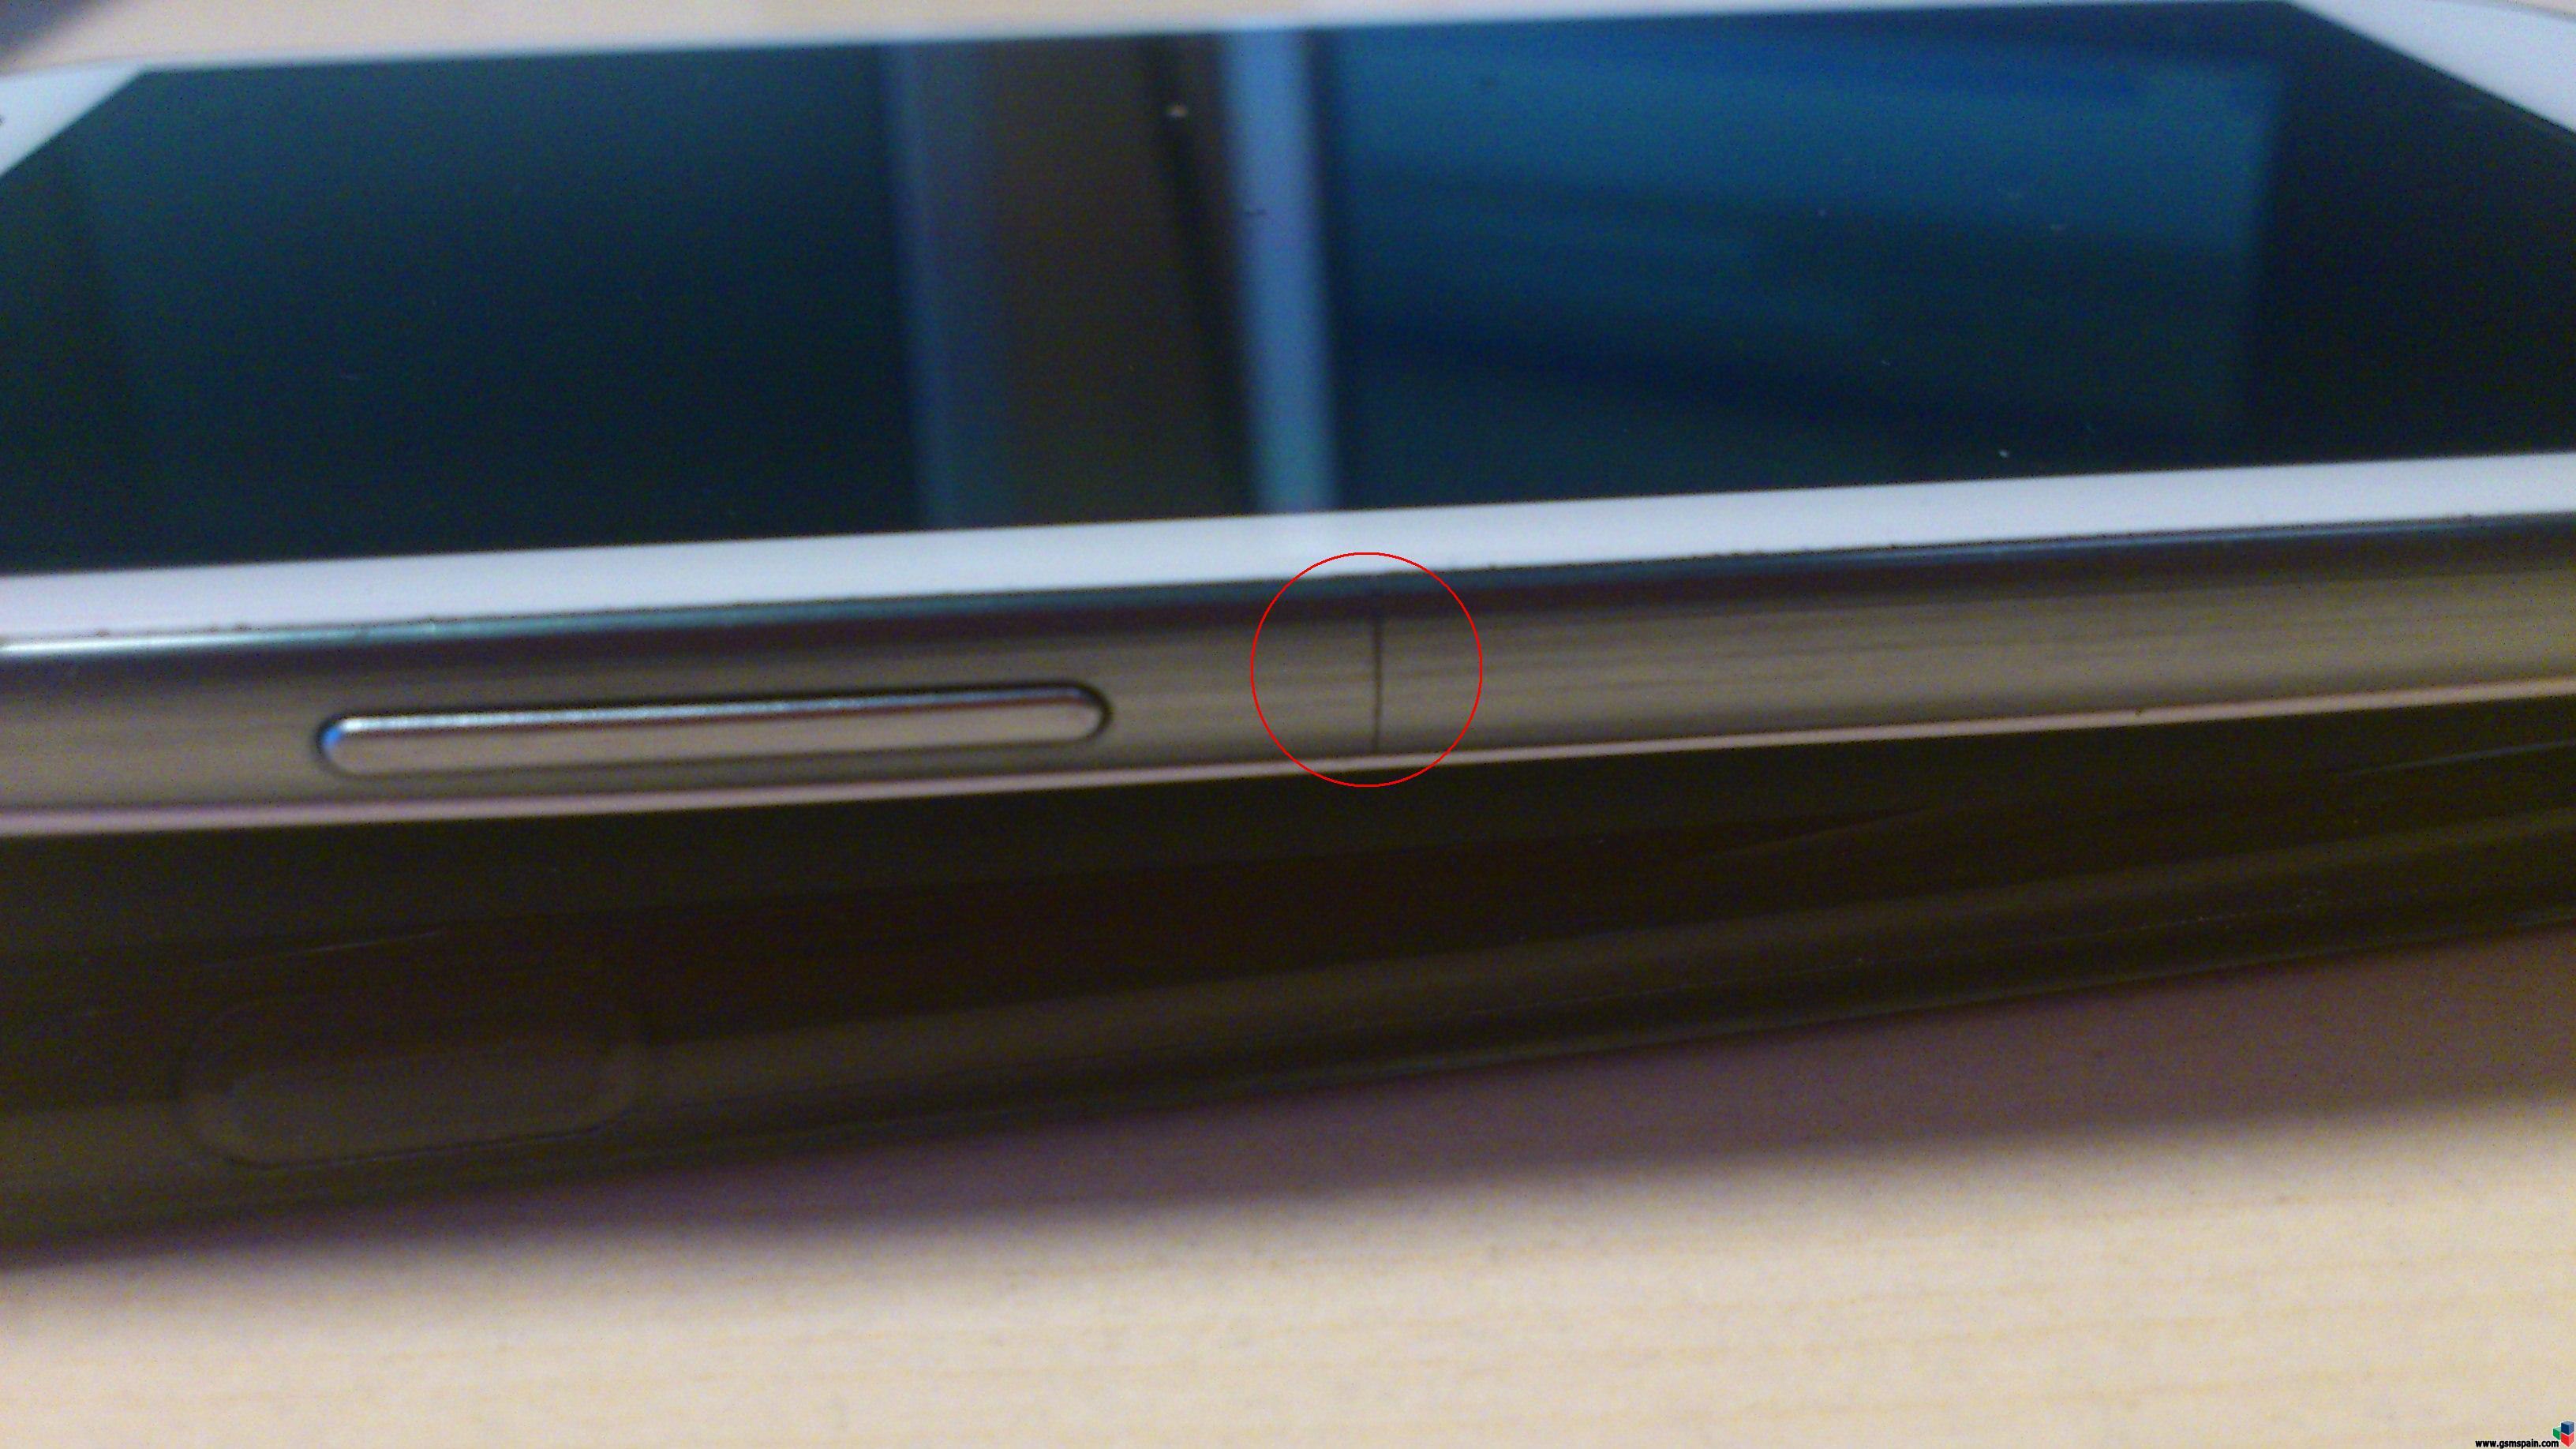 [CAMBIO] Samsung Galaxy S3 libre de origen blanco con desgaste en tapa